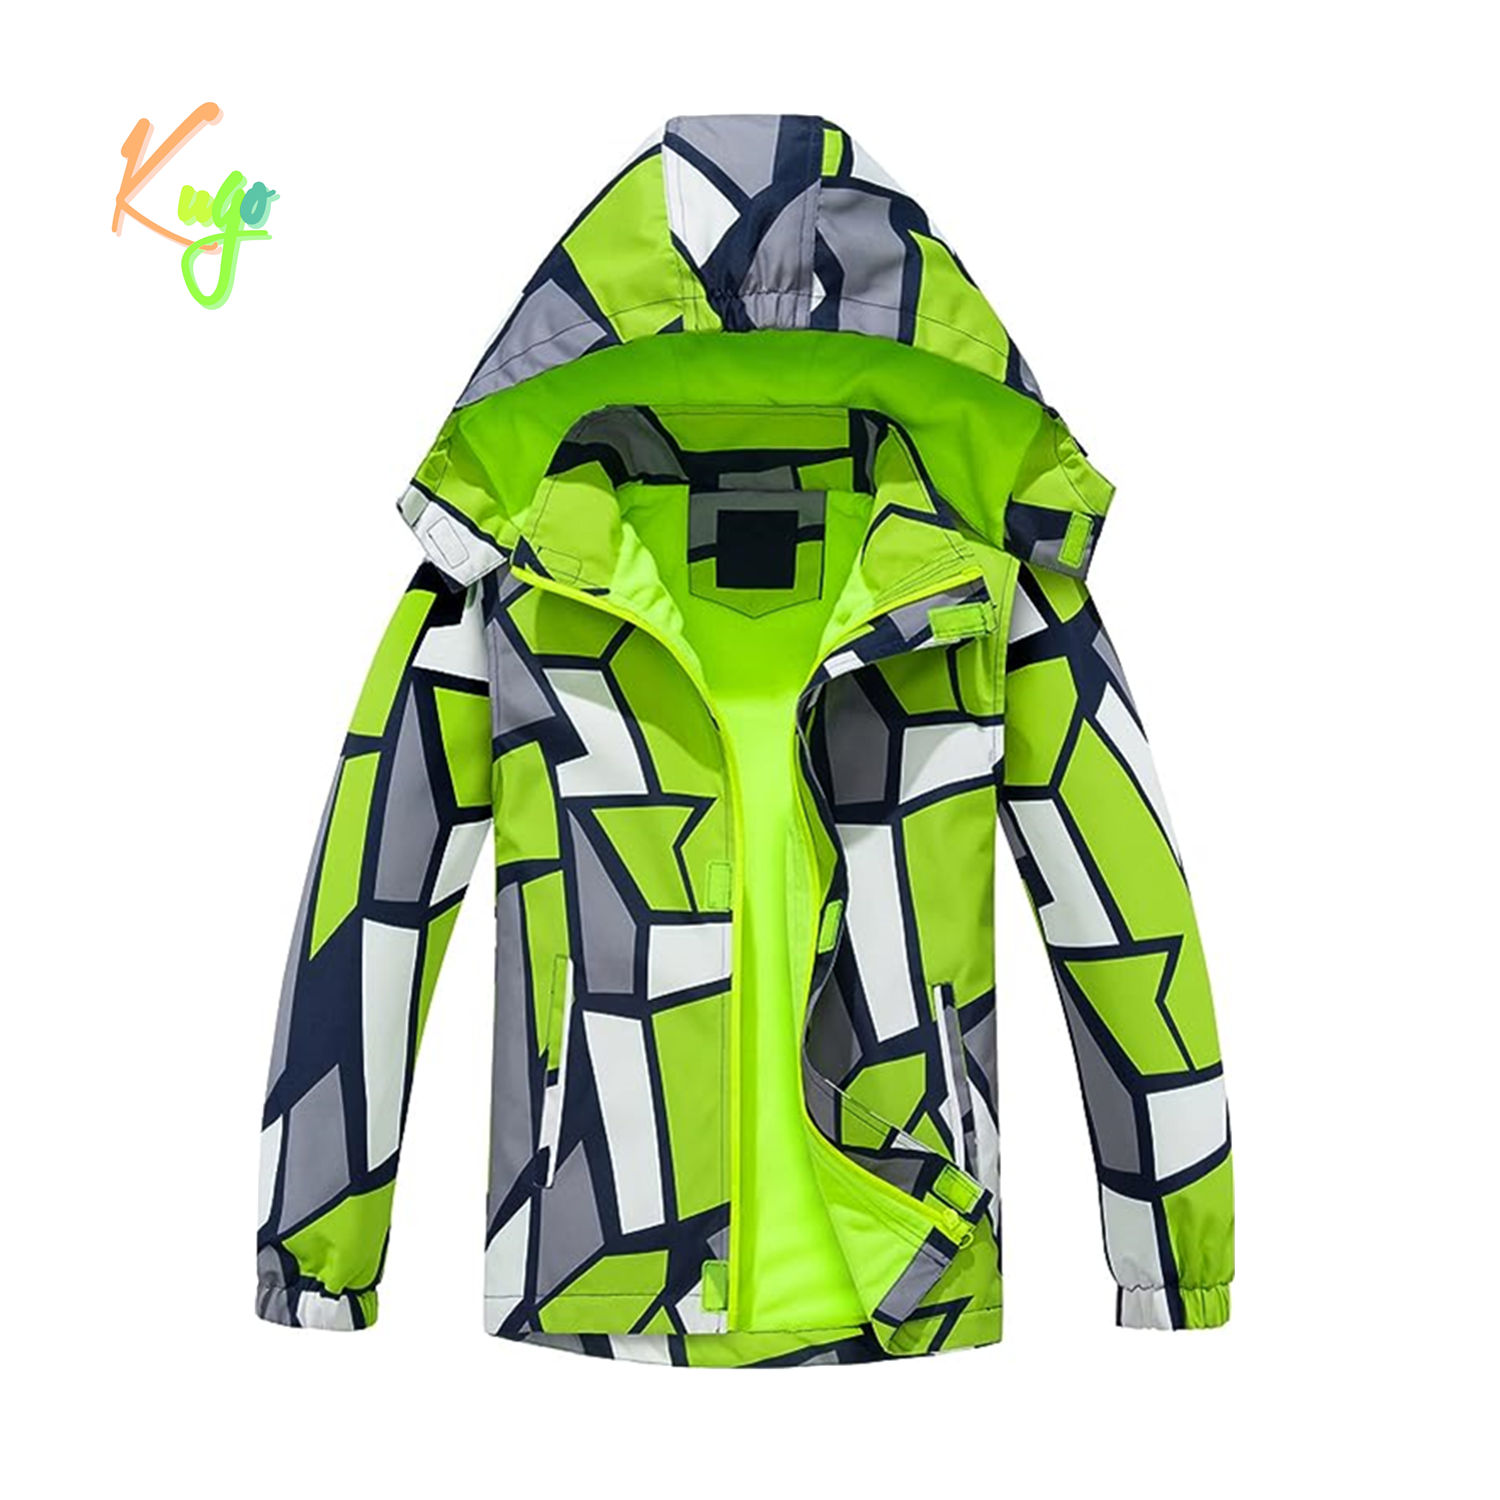 Chlapecká podzimní bunda, zateplená - KUGO B2860, zelená Barva: Zelená, Velikost: 122